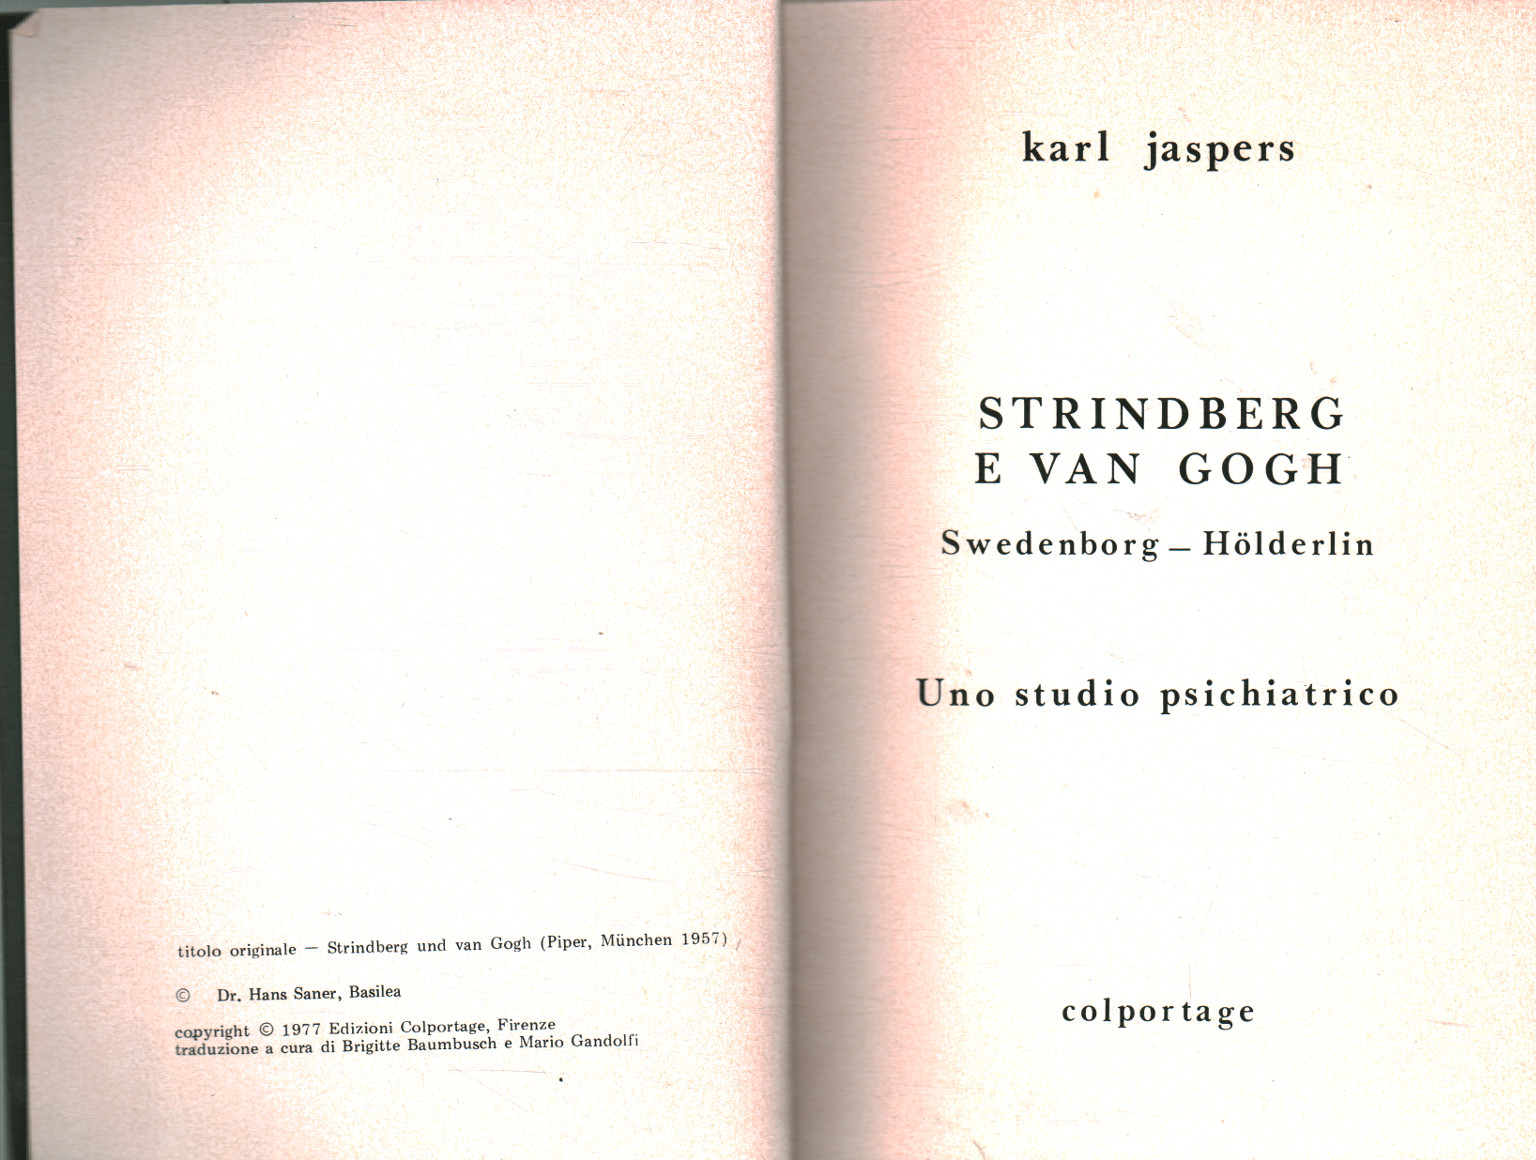 Strindberg et Van Gogh, Karl Jaspers